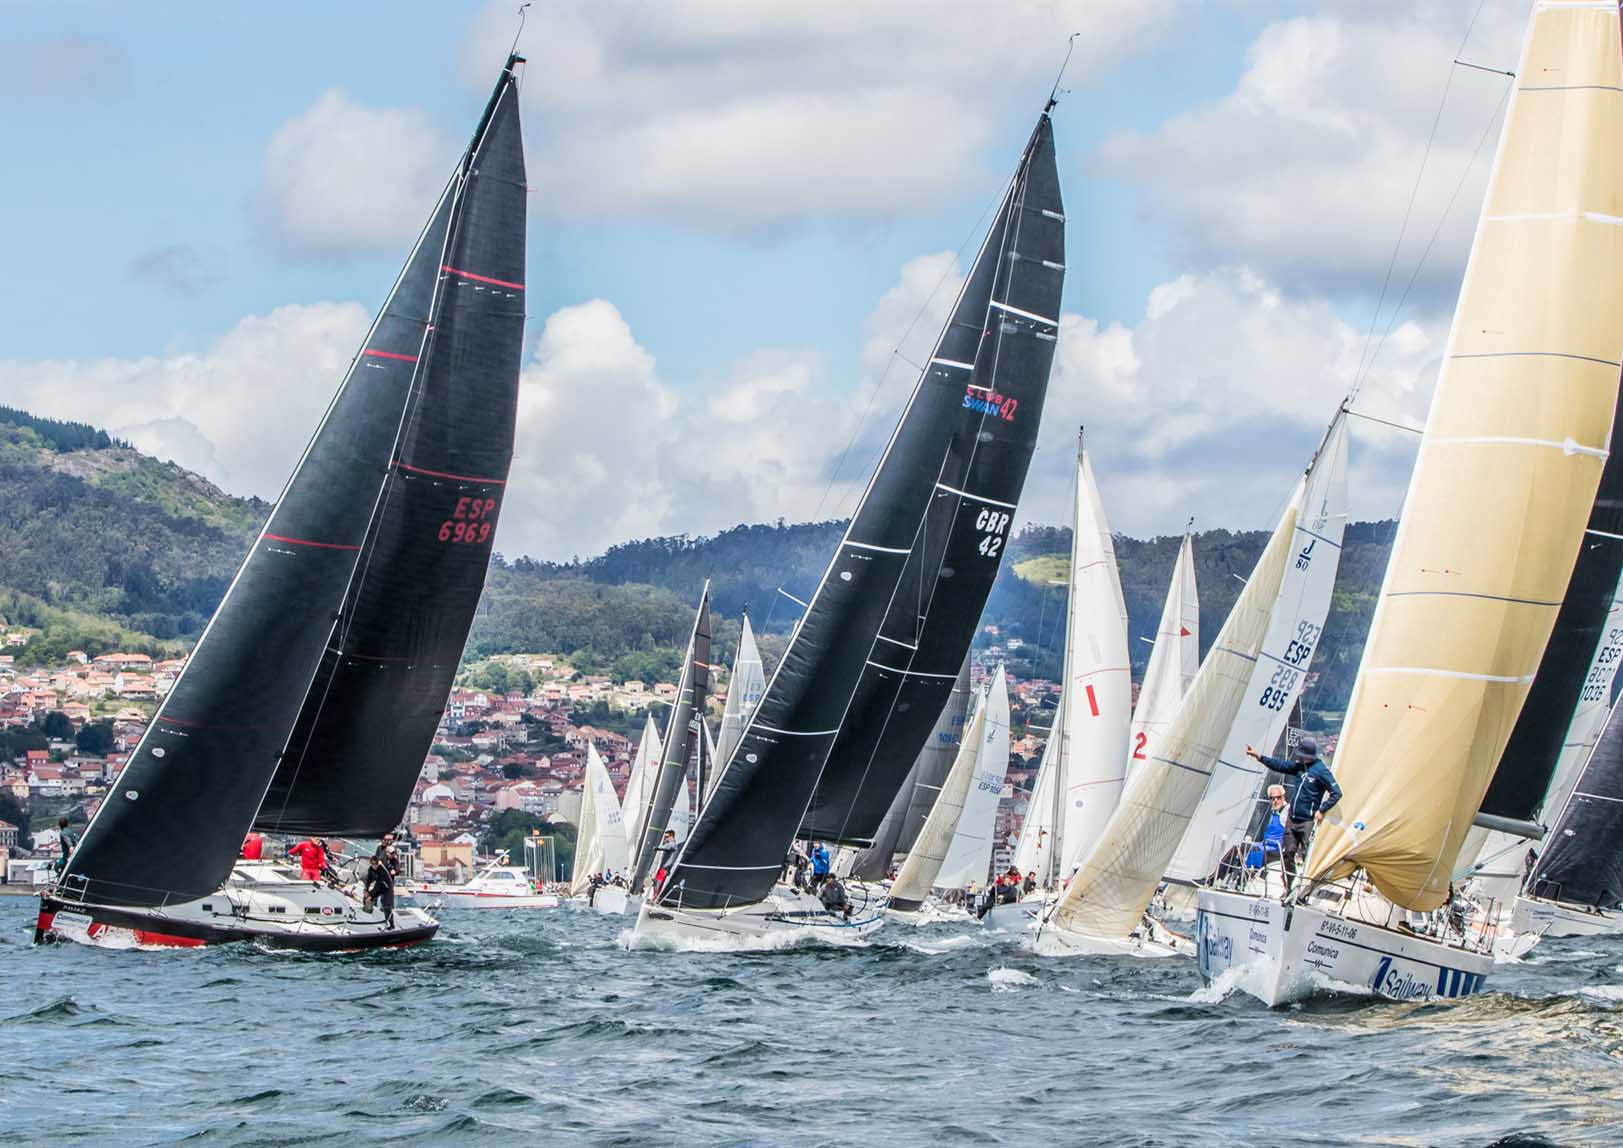 Los barcos del Real Club Náutico de Vigo y el Monte Real se imponen en el Trofeo Comunica